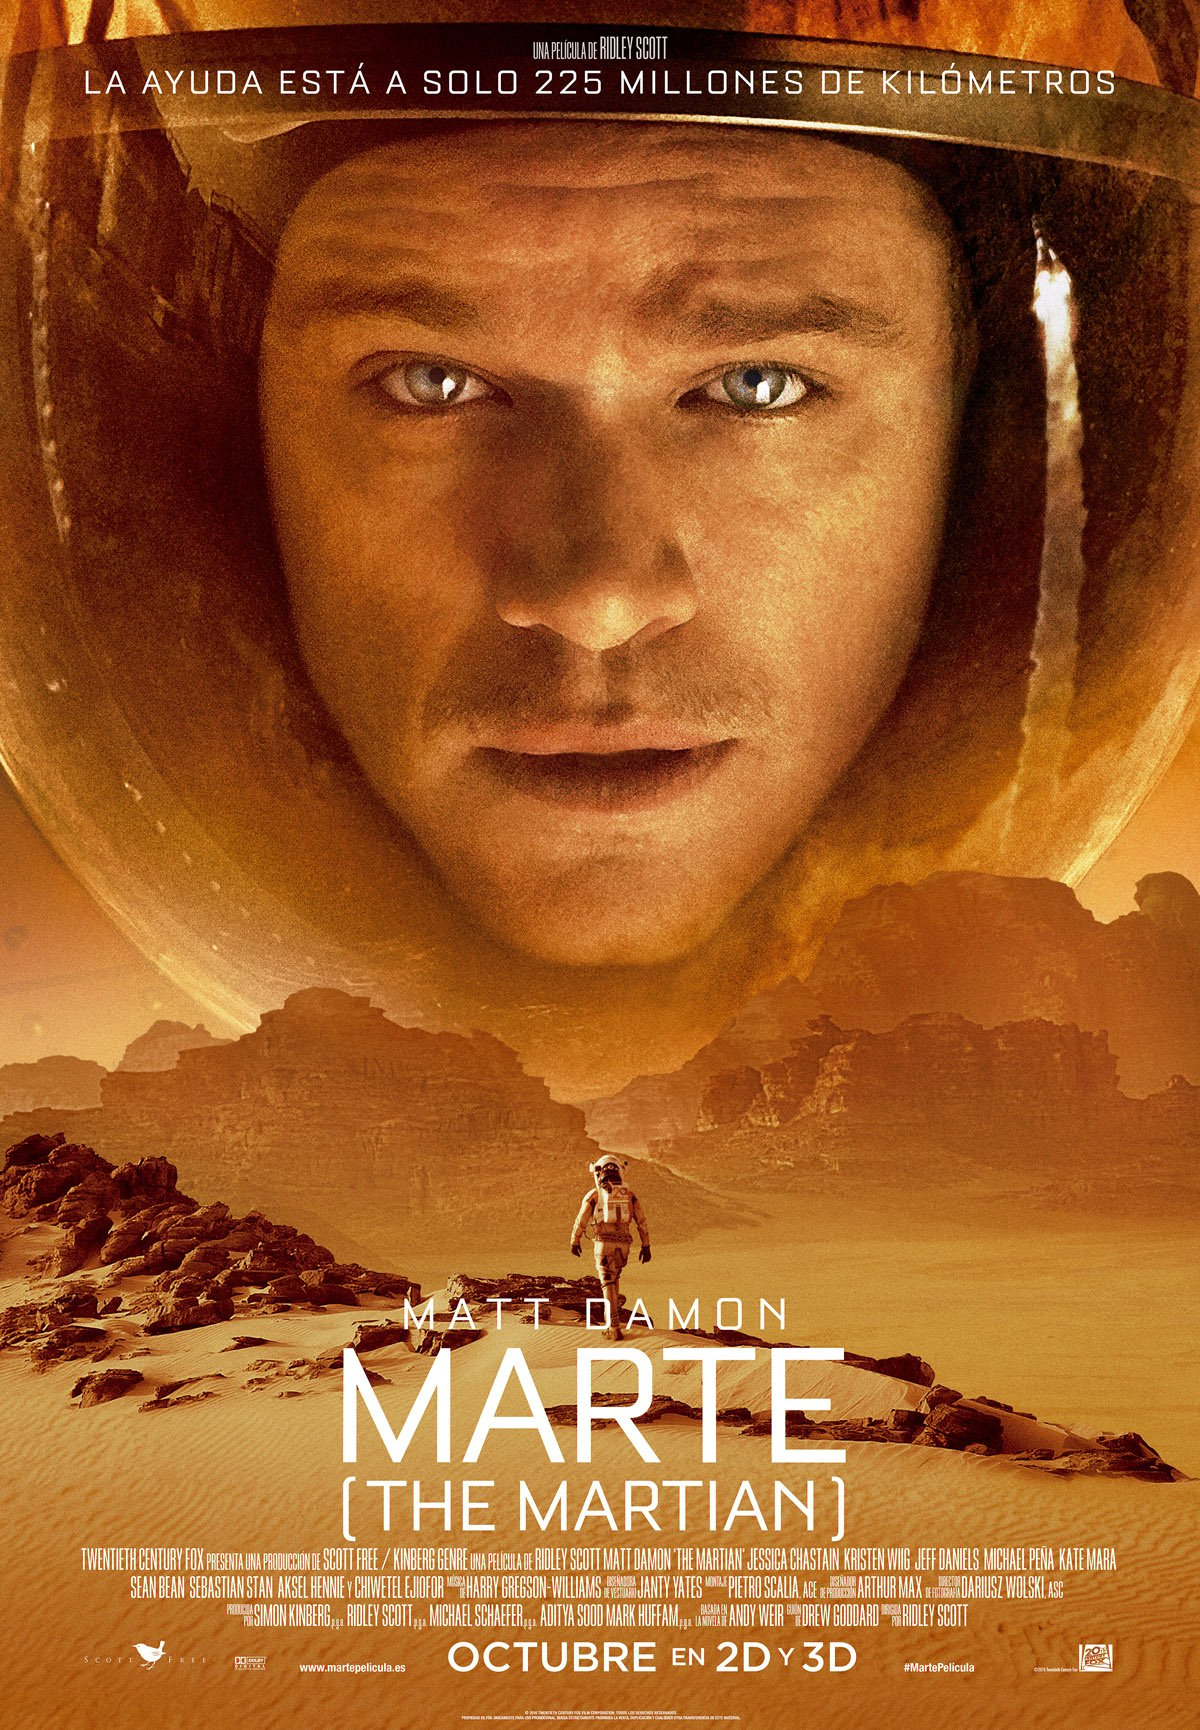 Resultado de imagen de Marte (The Martian)